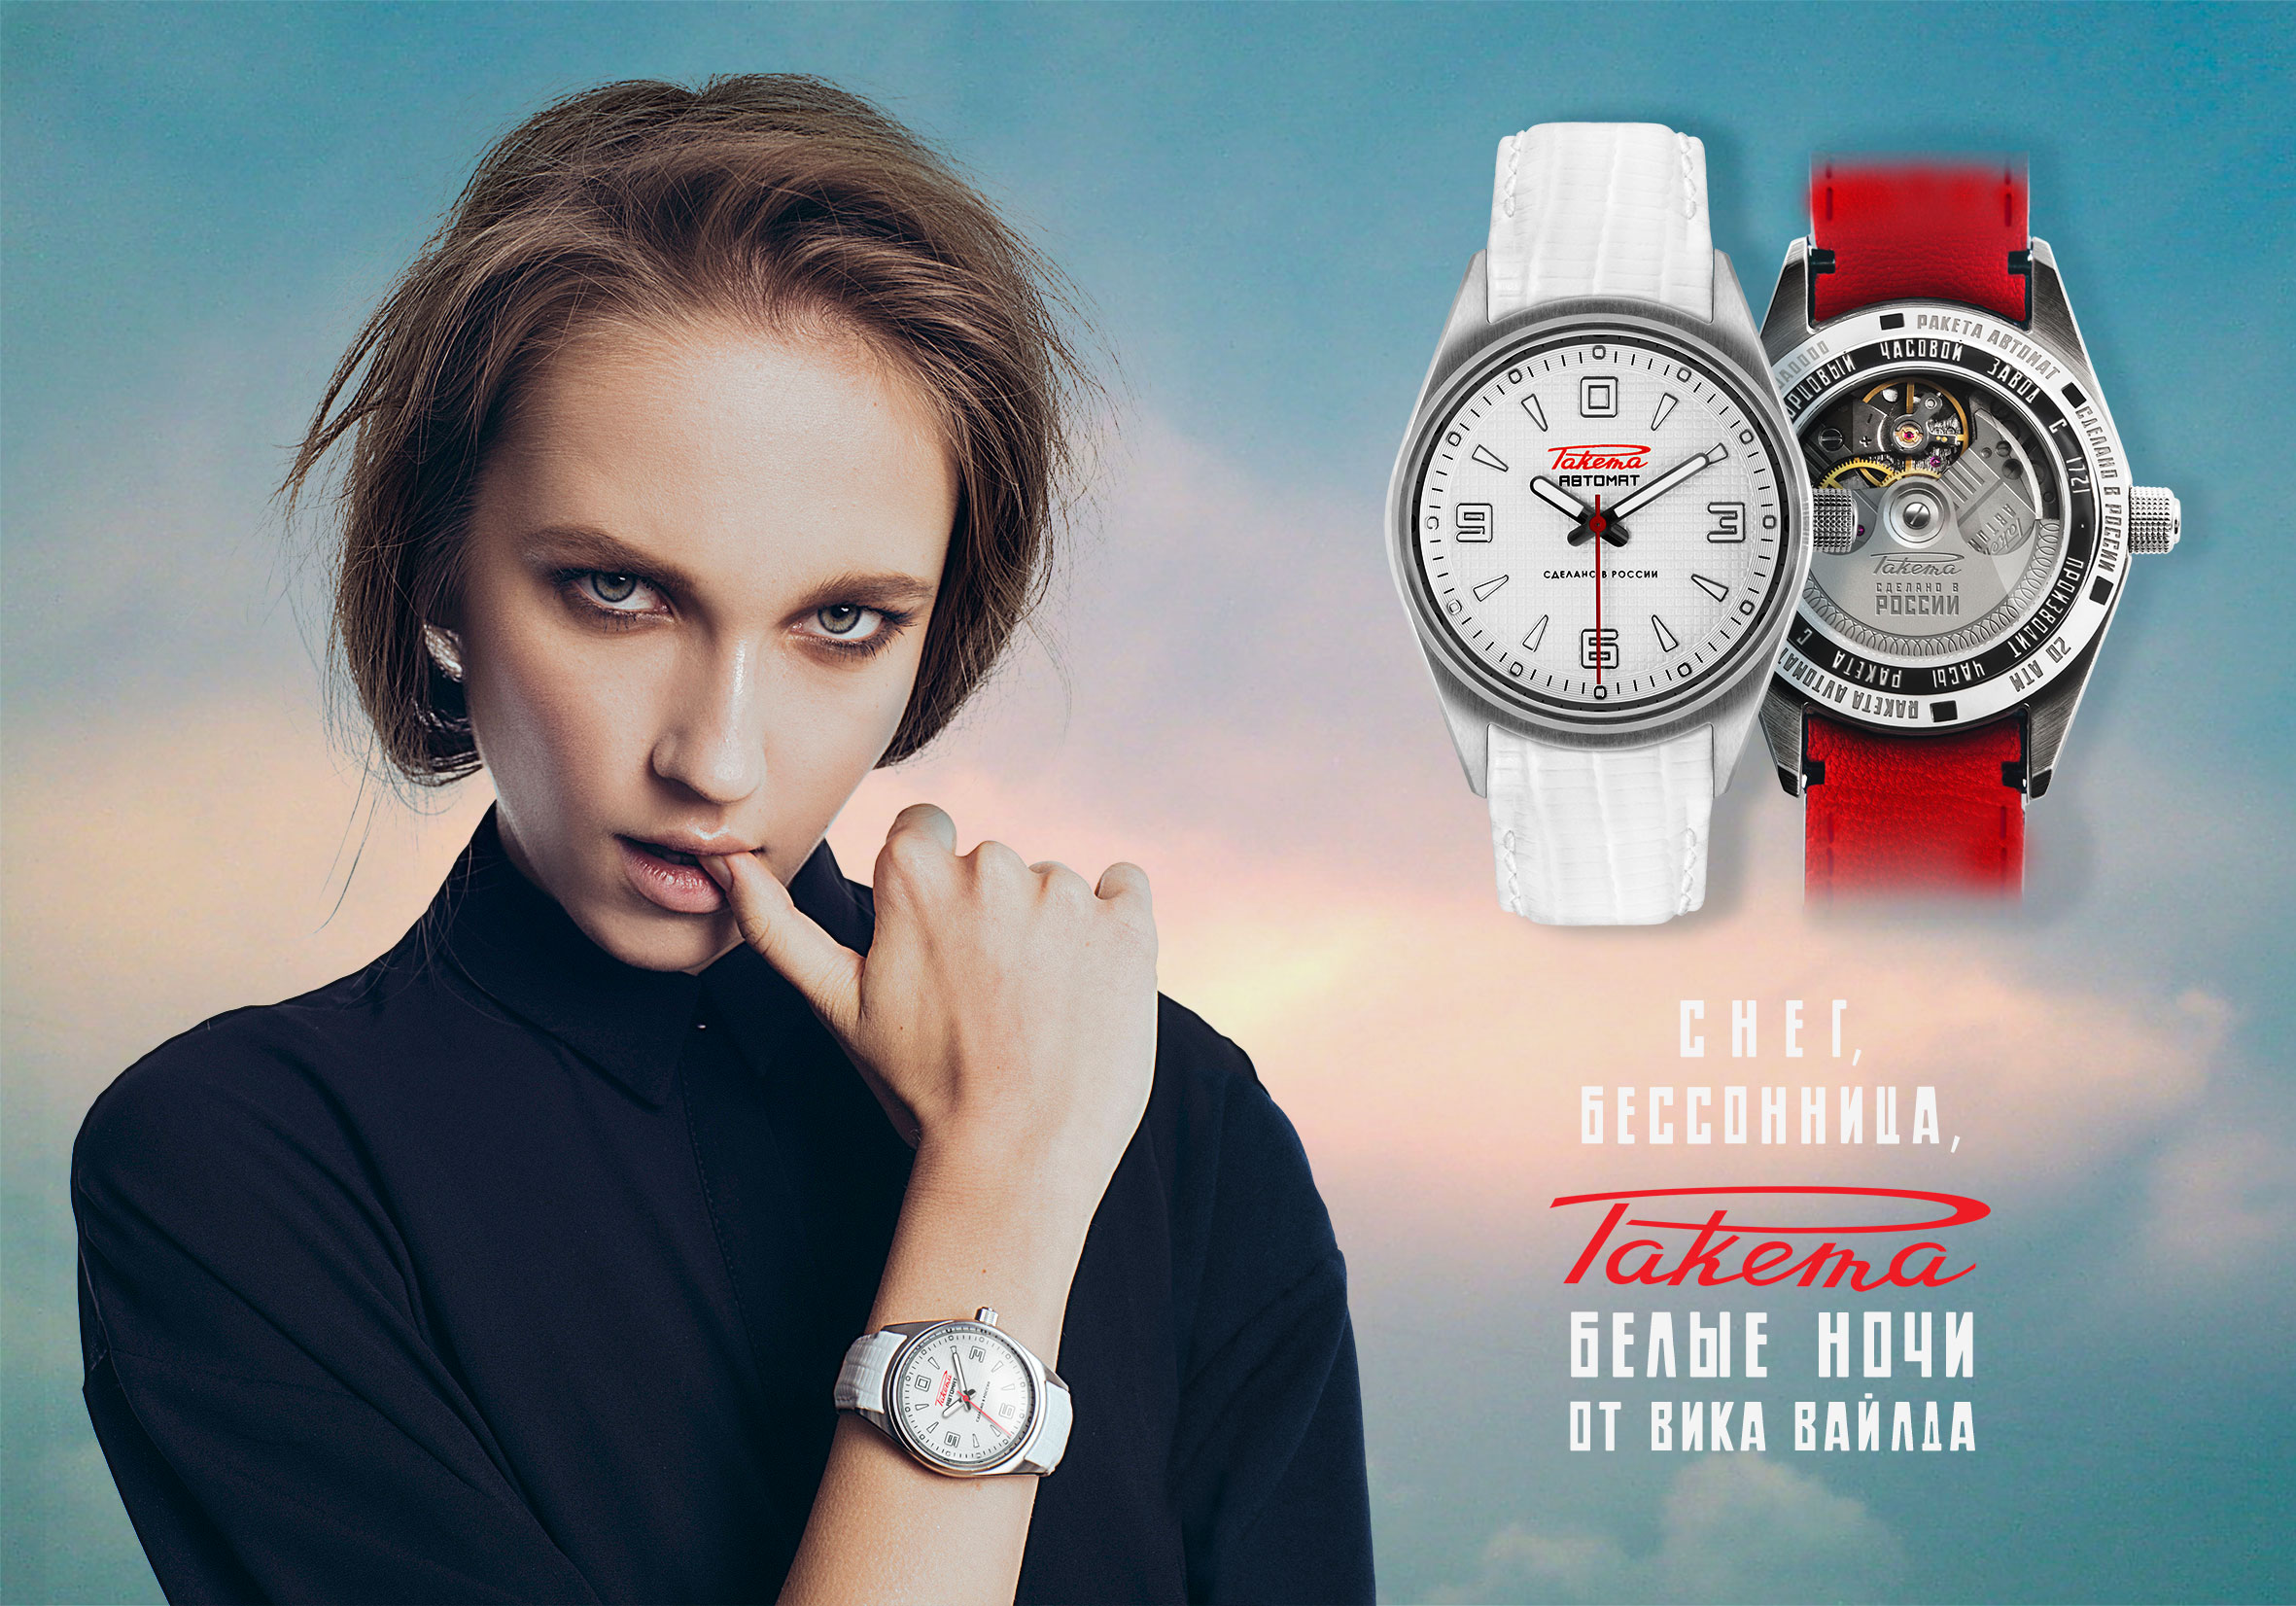 Реклама наручных часов. Реклама часов. Часы реклама. Наручные часы реклама. Швейцарские часы реклама.